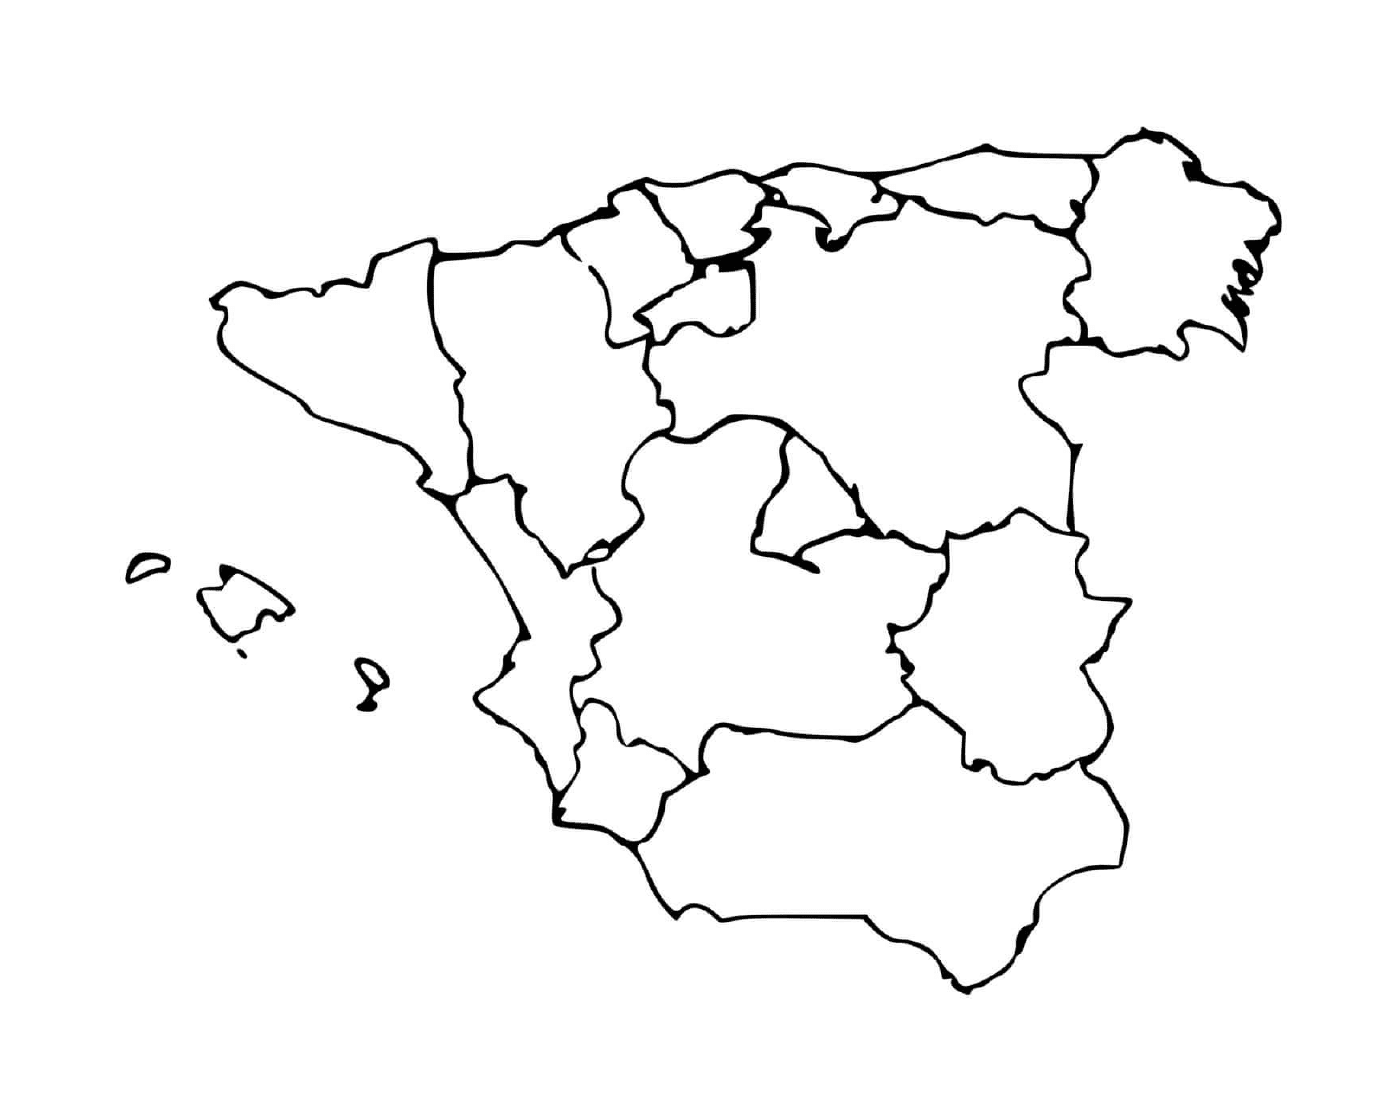  Mappa dettagliata della Spagna 